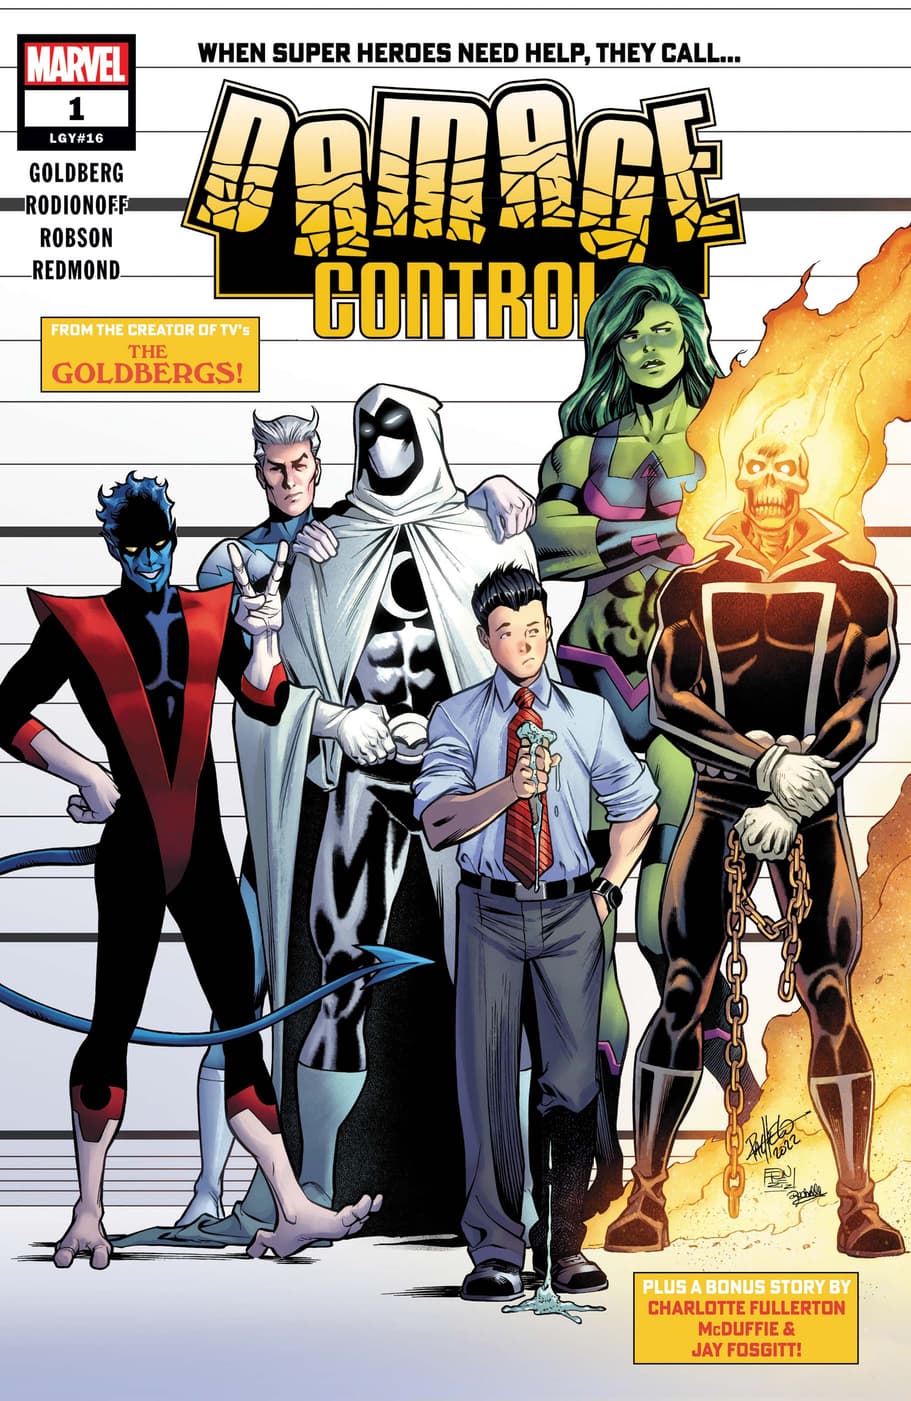 August 24's New Marvel Comics: The Full List | Marvel